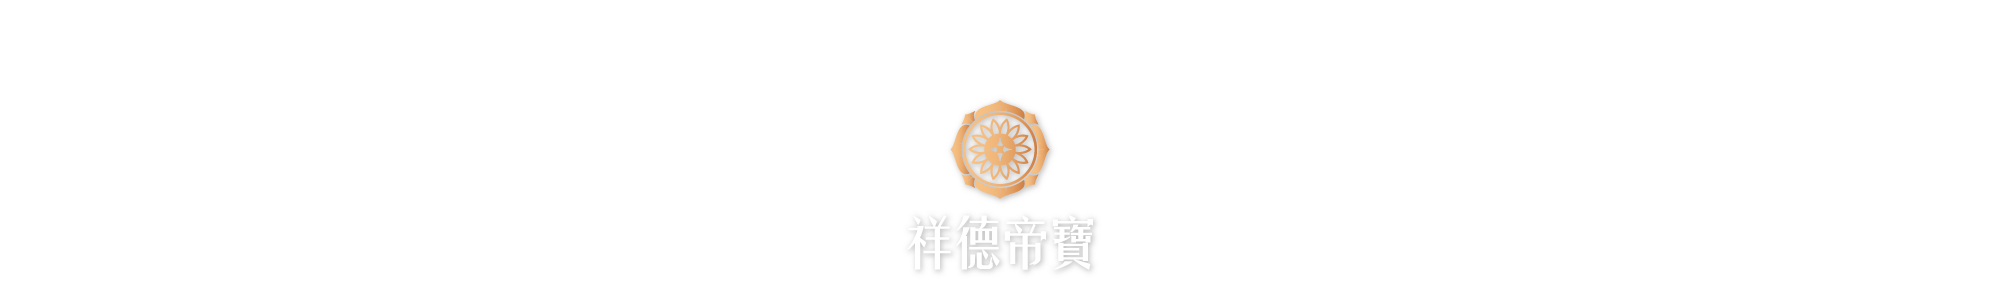 祥德帝寶logo